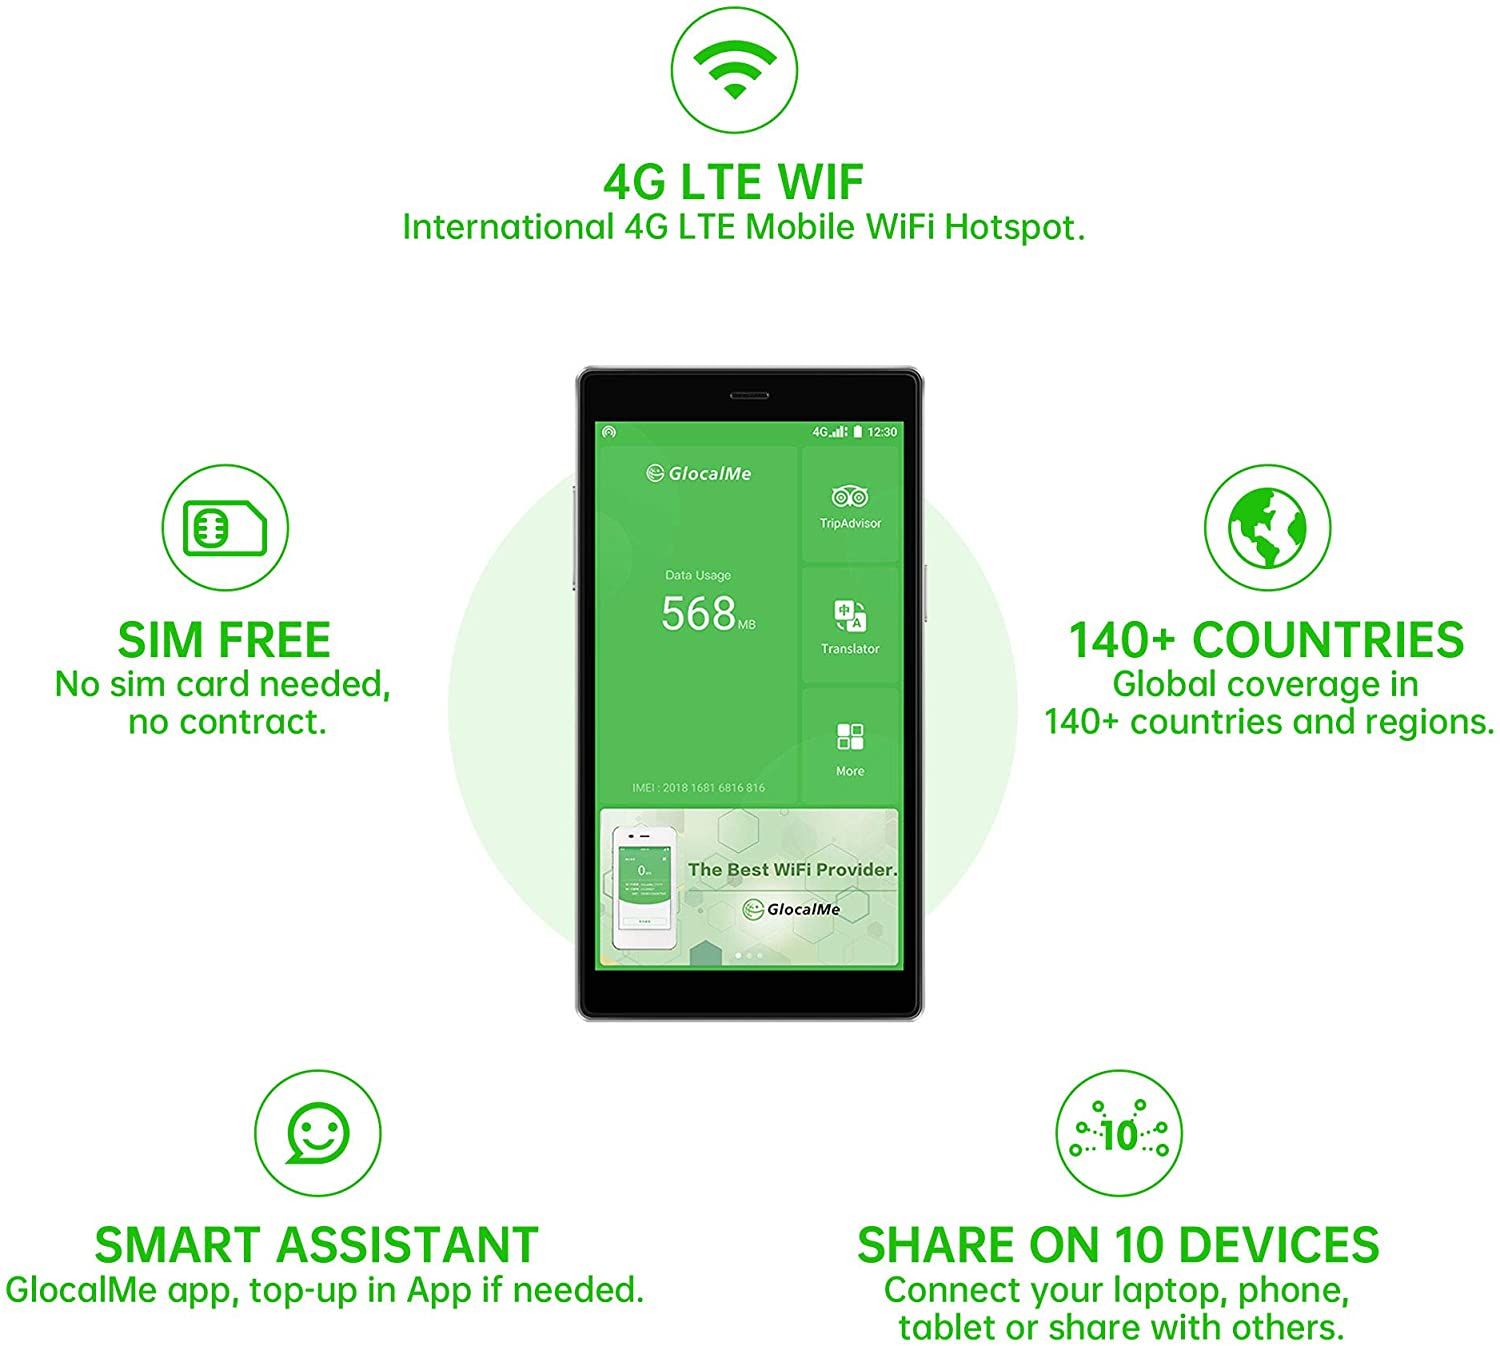 GlocalMe G4 Pro 4G LTE Mobile Hotspot features